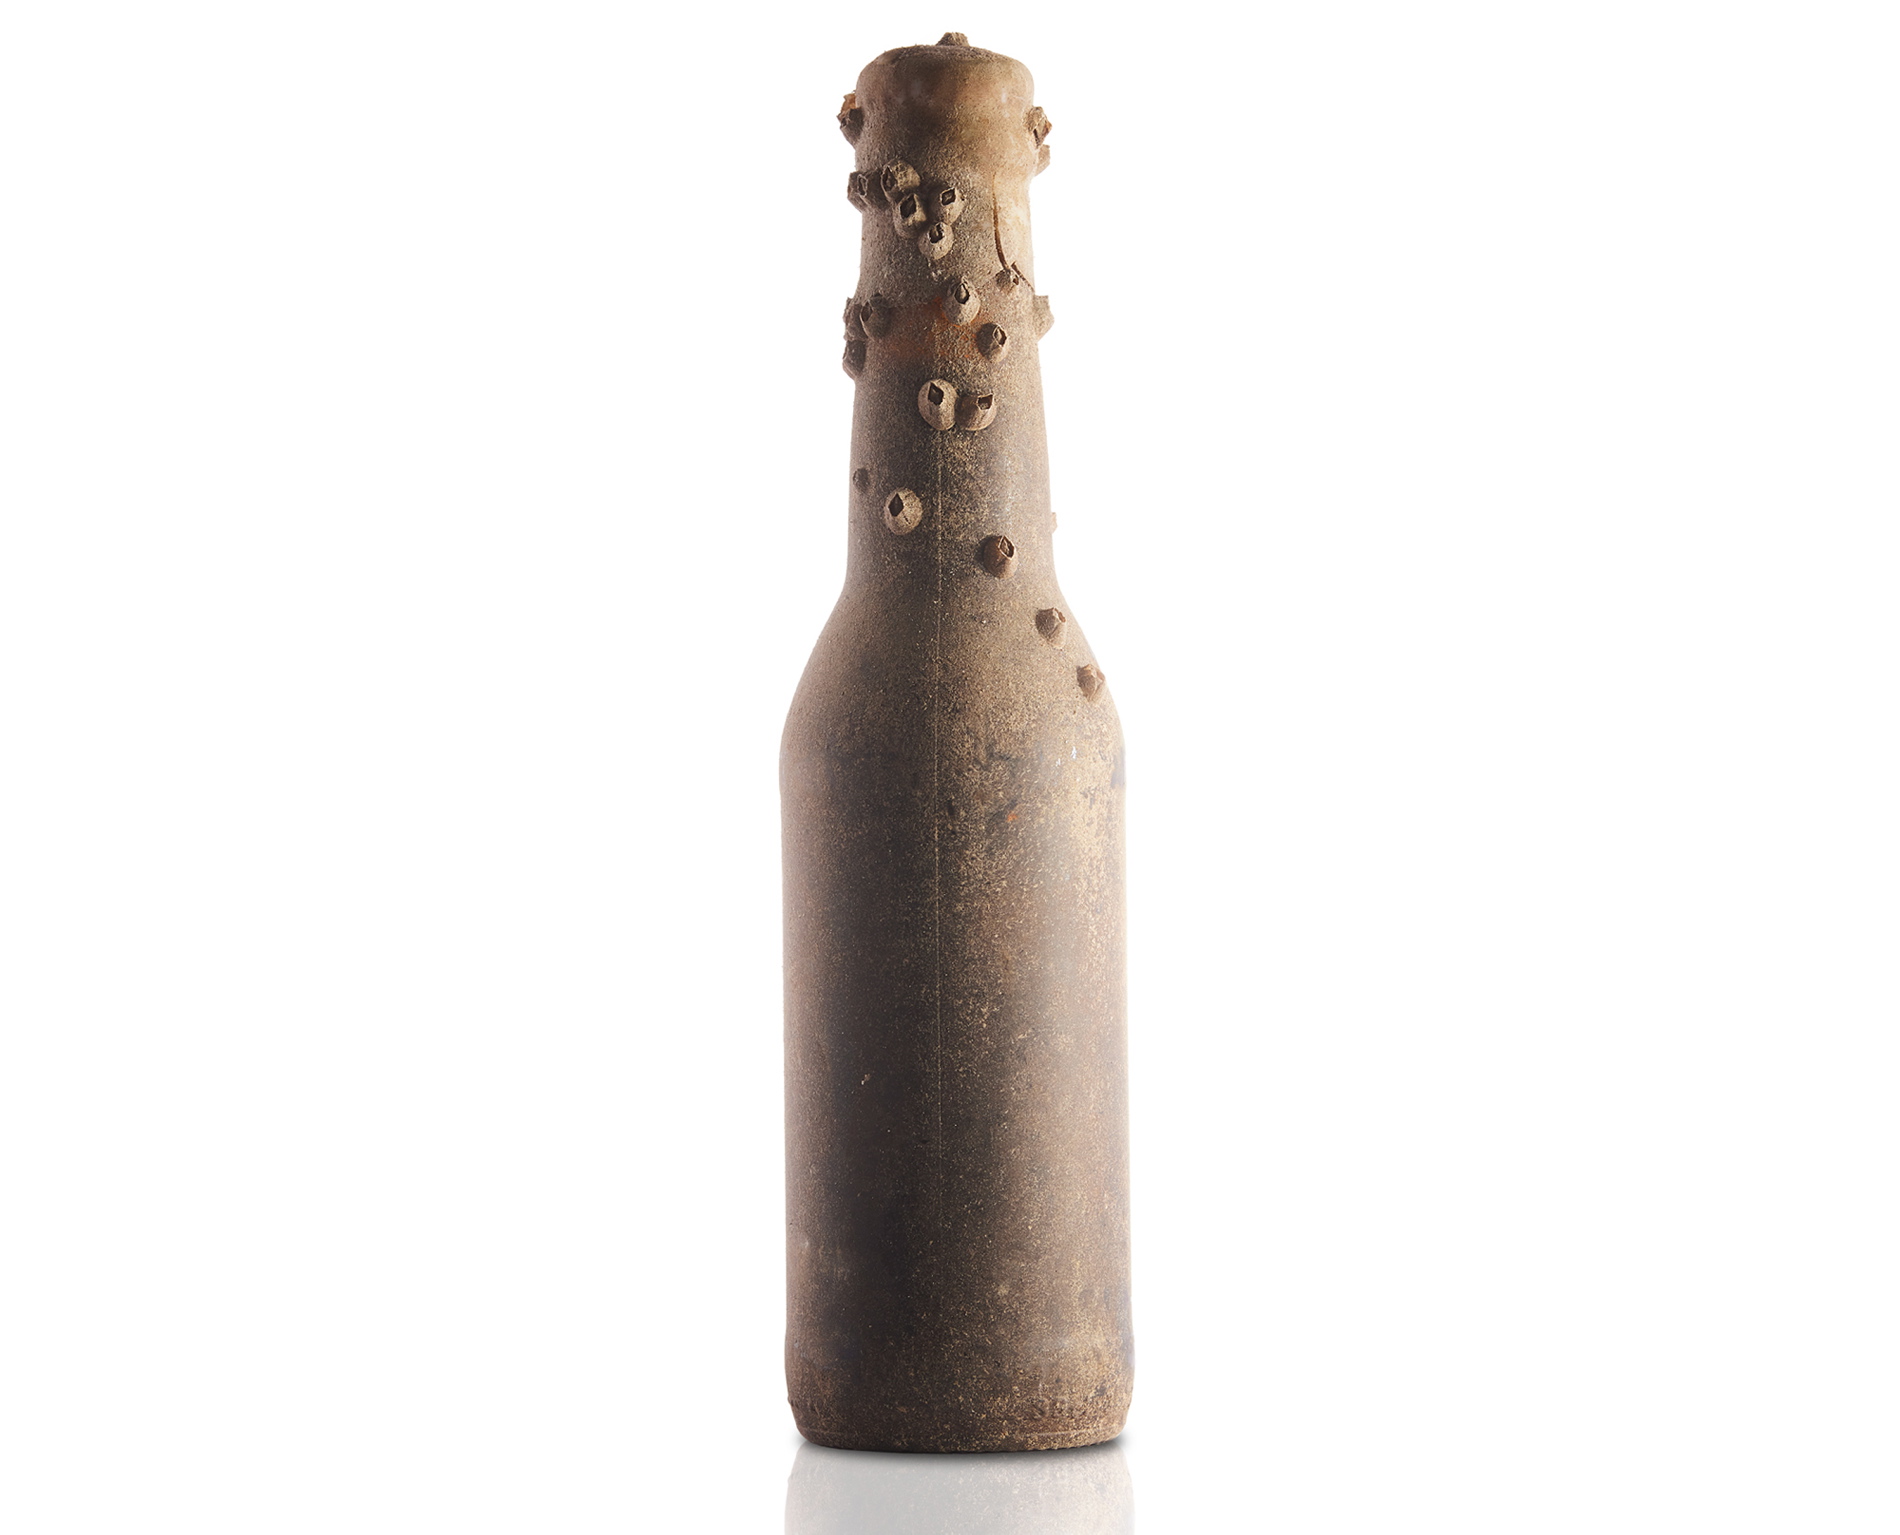 Zalakowana butelka piwa, które jest leżakowane na dnie Morza Bałtyckiego